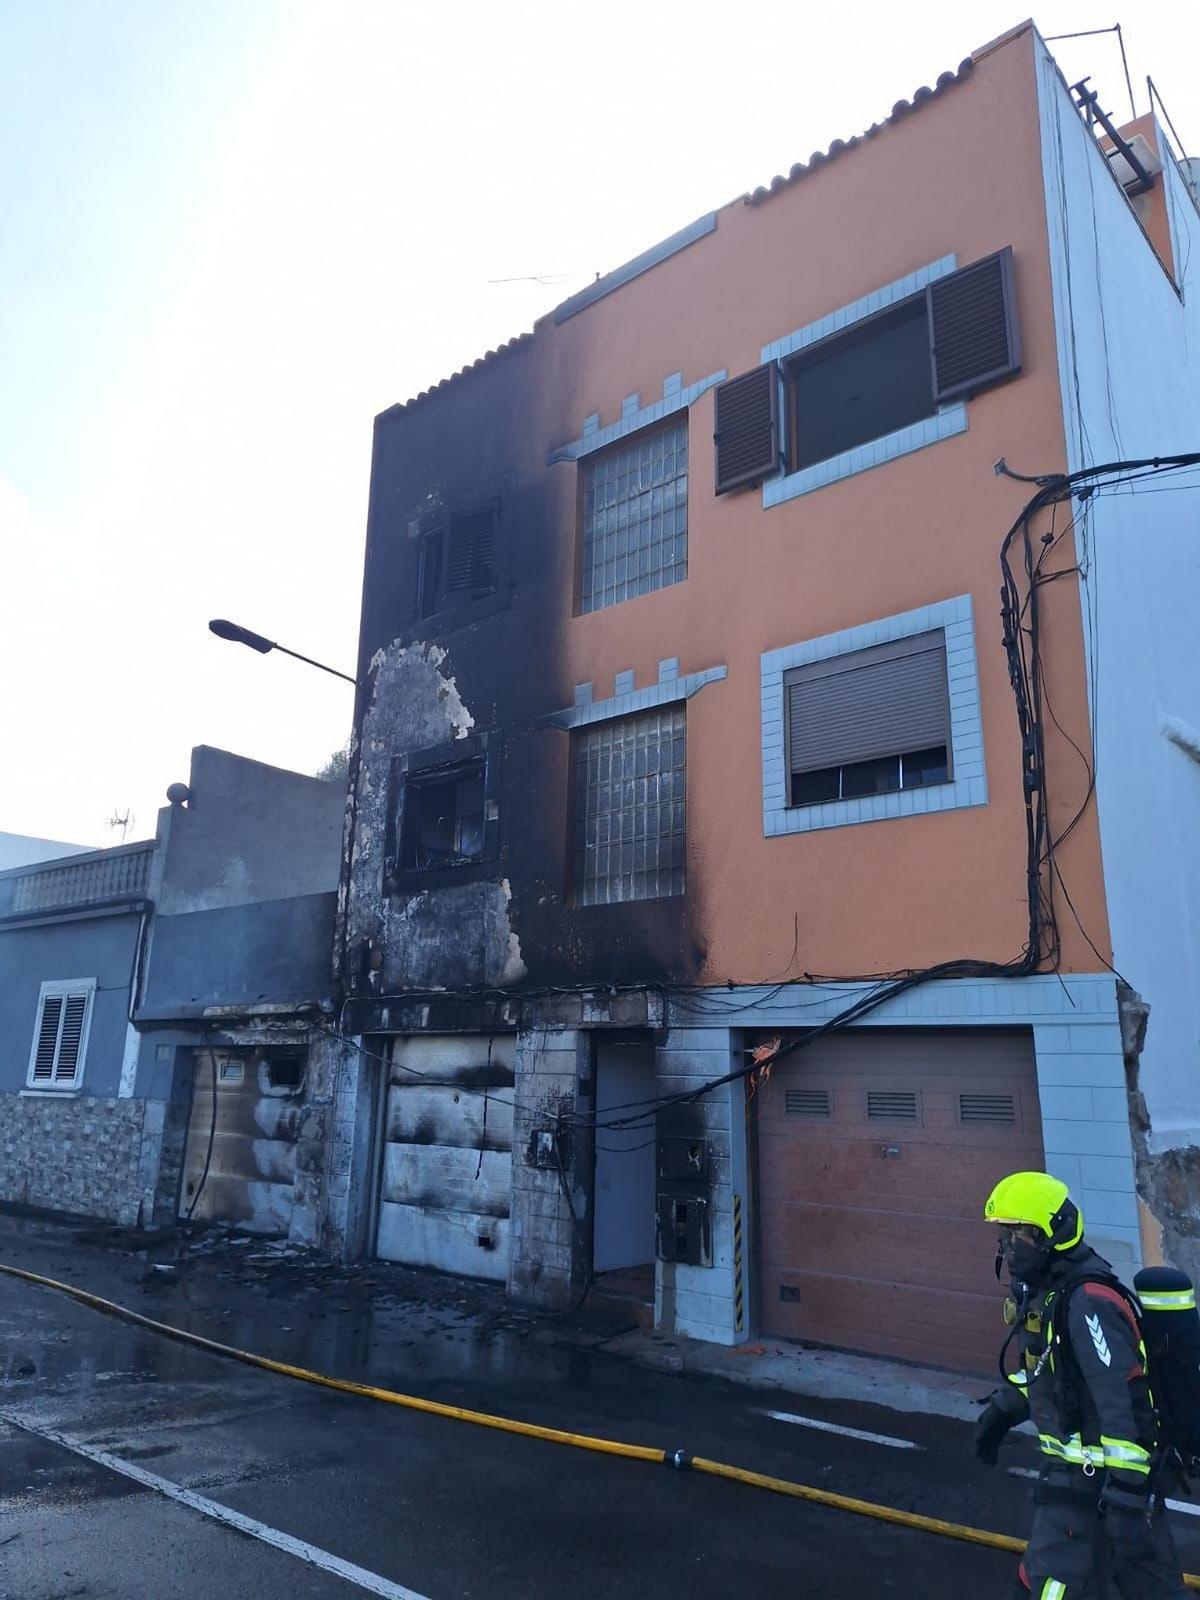 Imagen de la vivienda afectada por el incendio de este lunes en Santa Brígida.